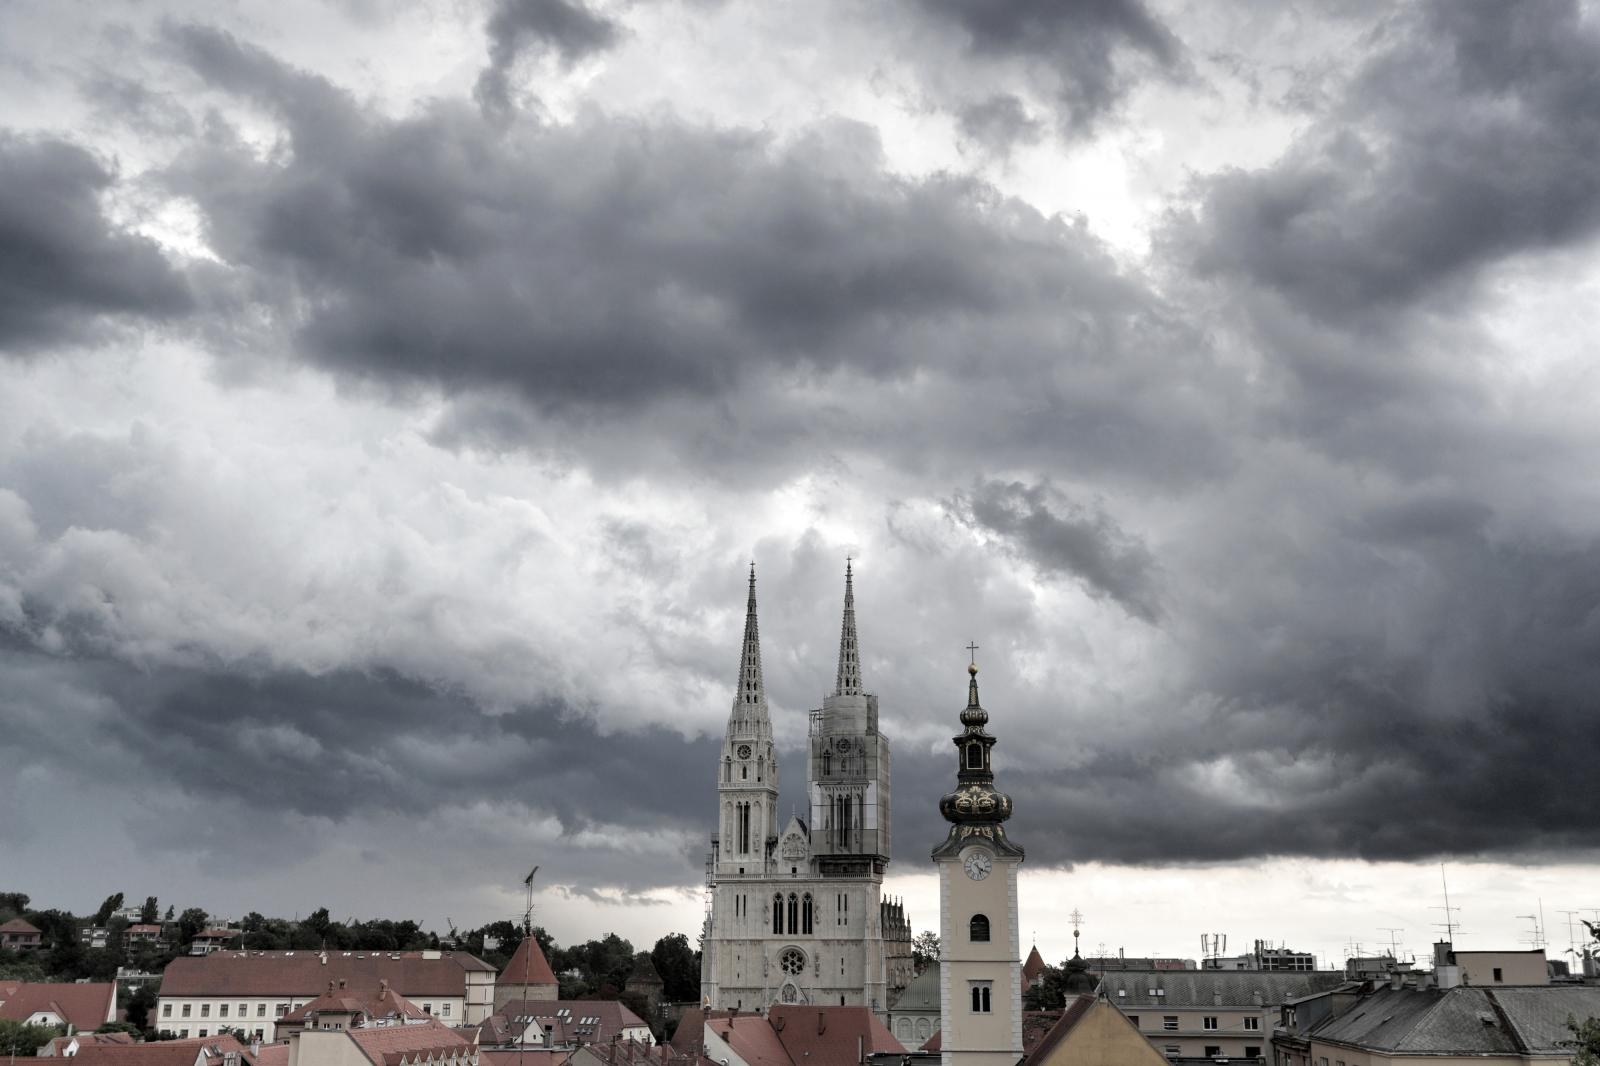 07.07.2019., Zagreb - Olujni oblaci nad Zagrebom. Photo: Davor Puklavec/PIXSELL